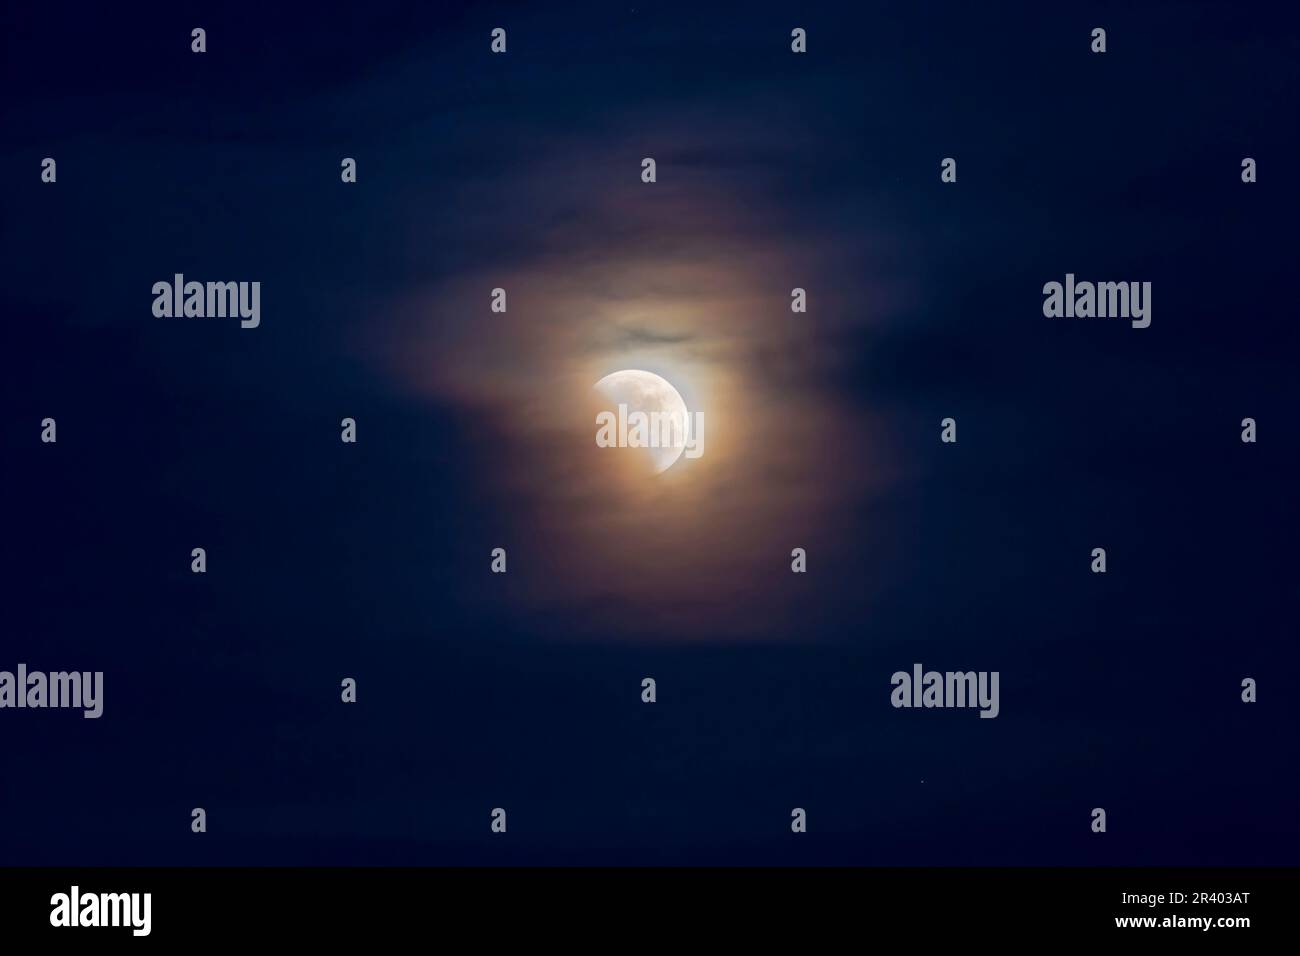 26 mai 2021 - éclipse lunaire partielle dans les nuages. Banque D'Images